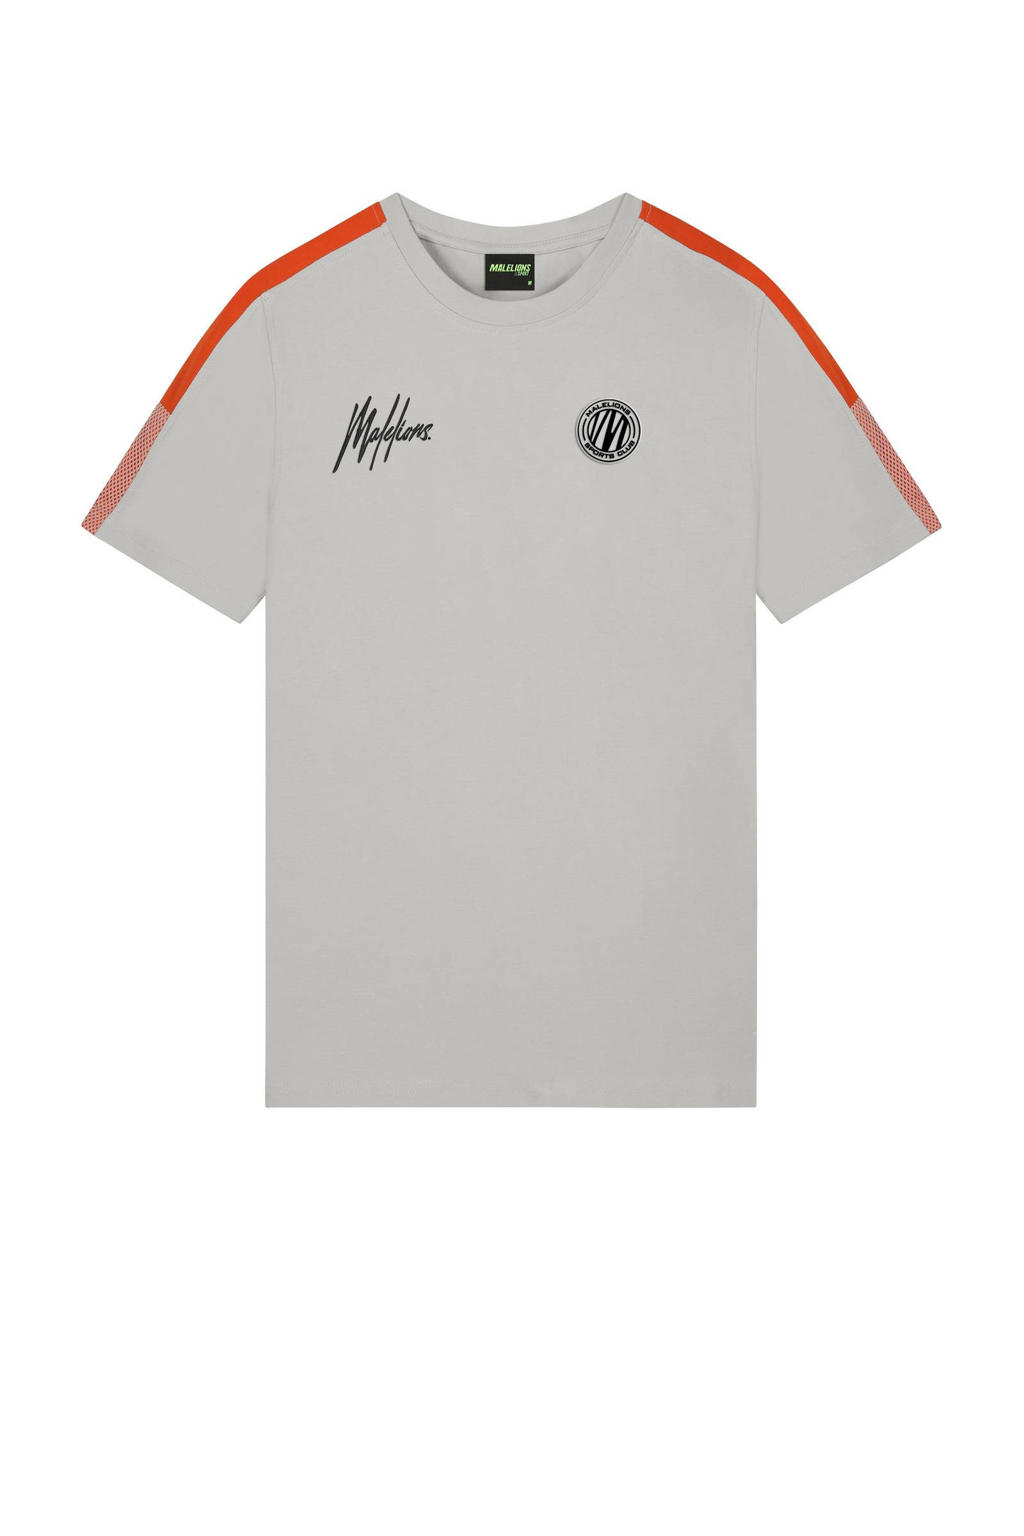 Grijs en oranje heren Malelions sport T-shirt van katoen met logo dessin, korte mouwen en ronde hals